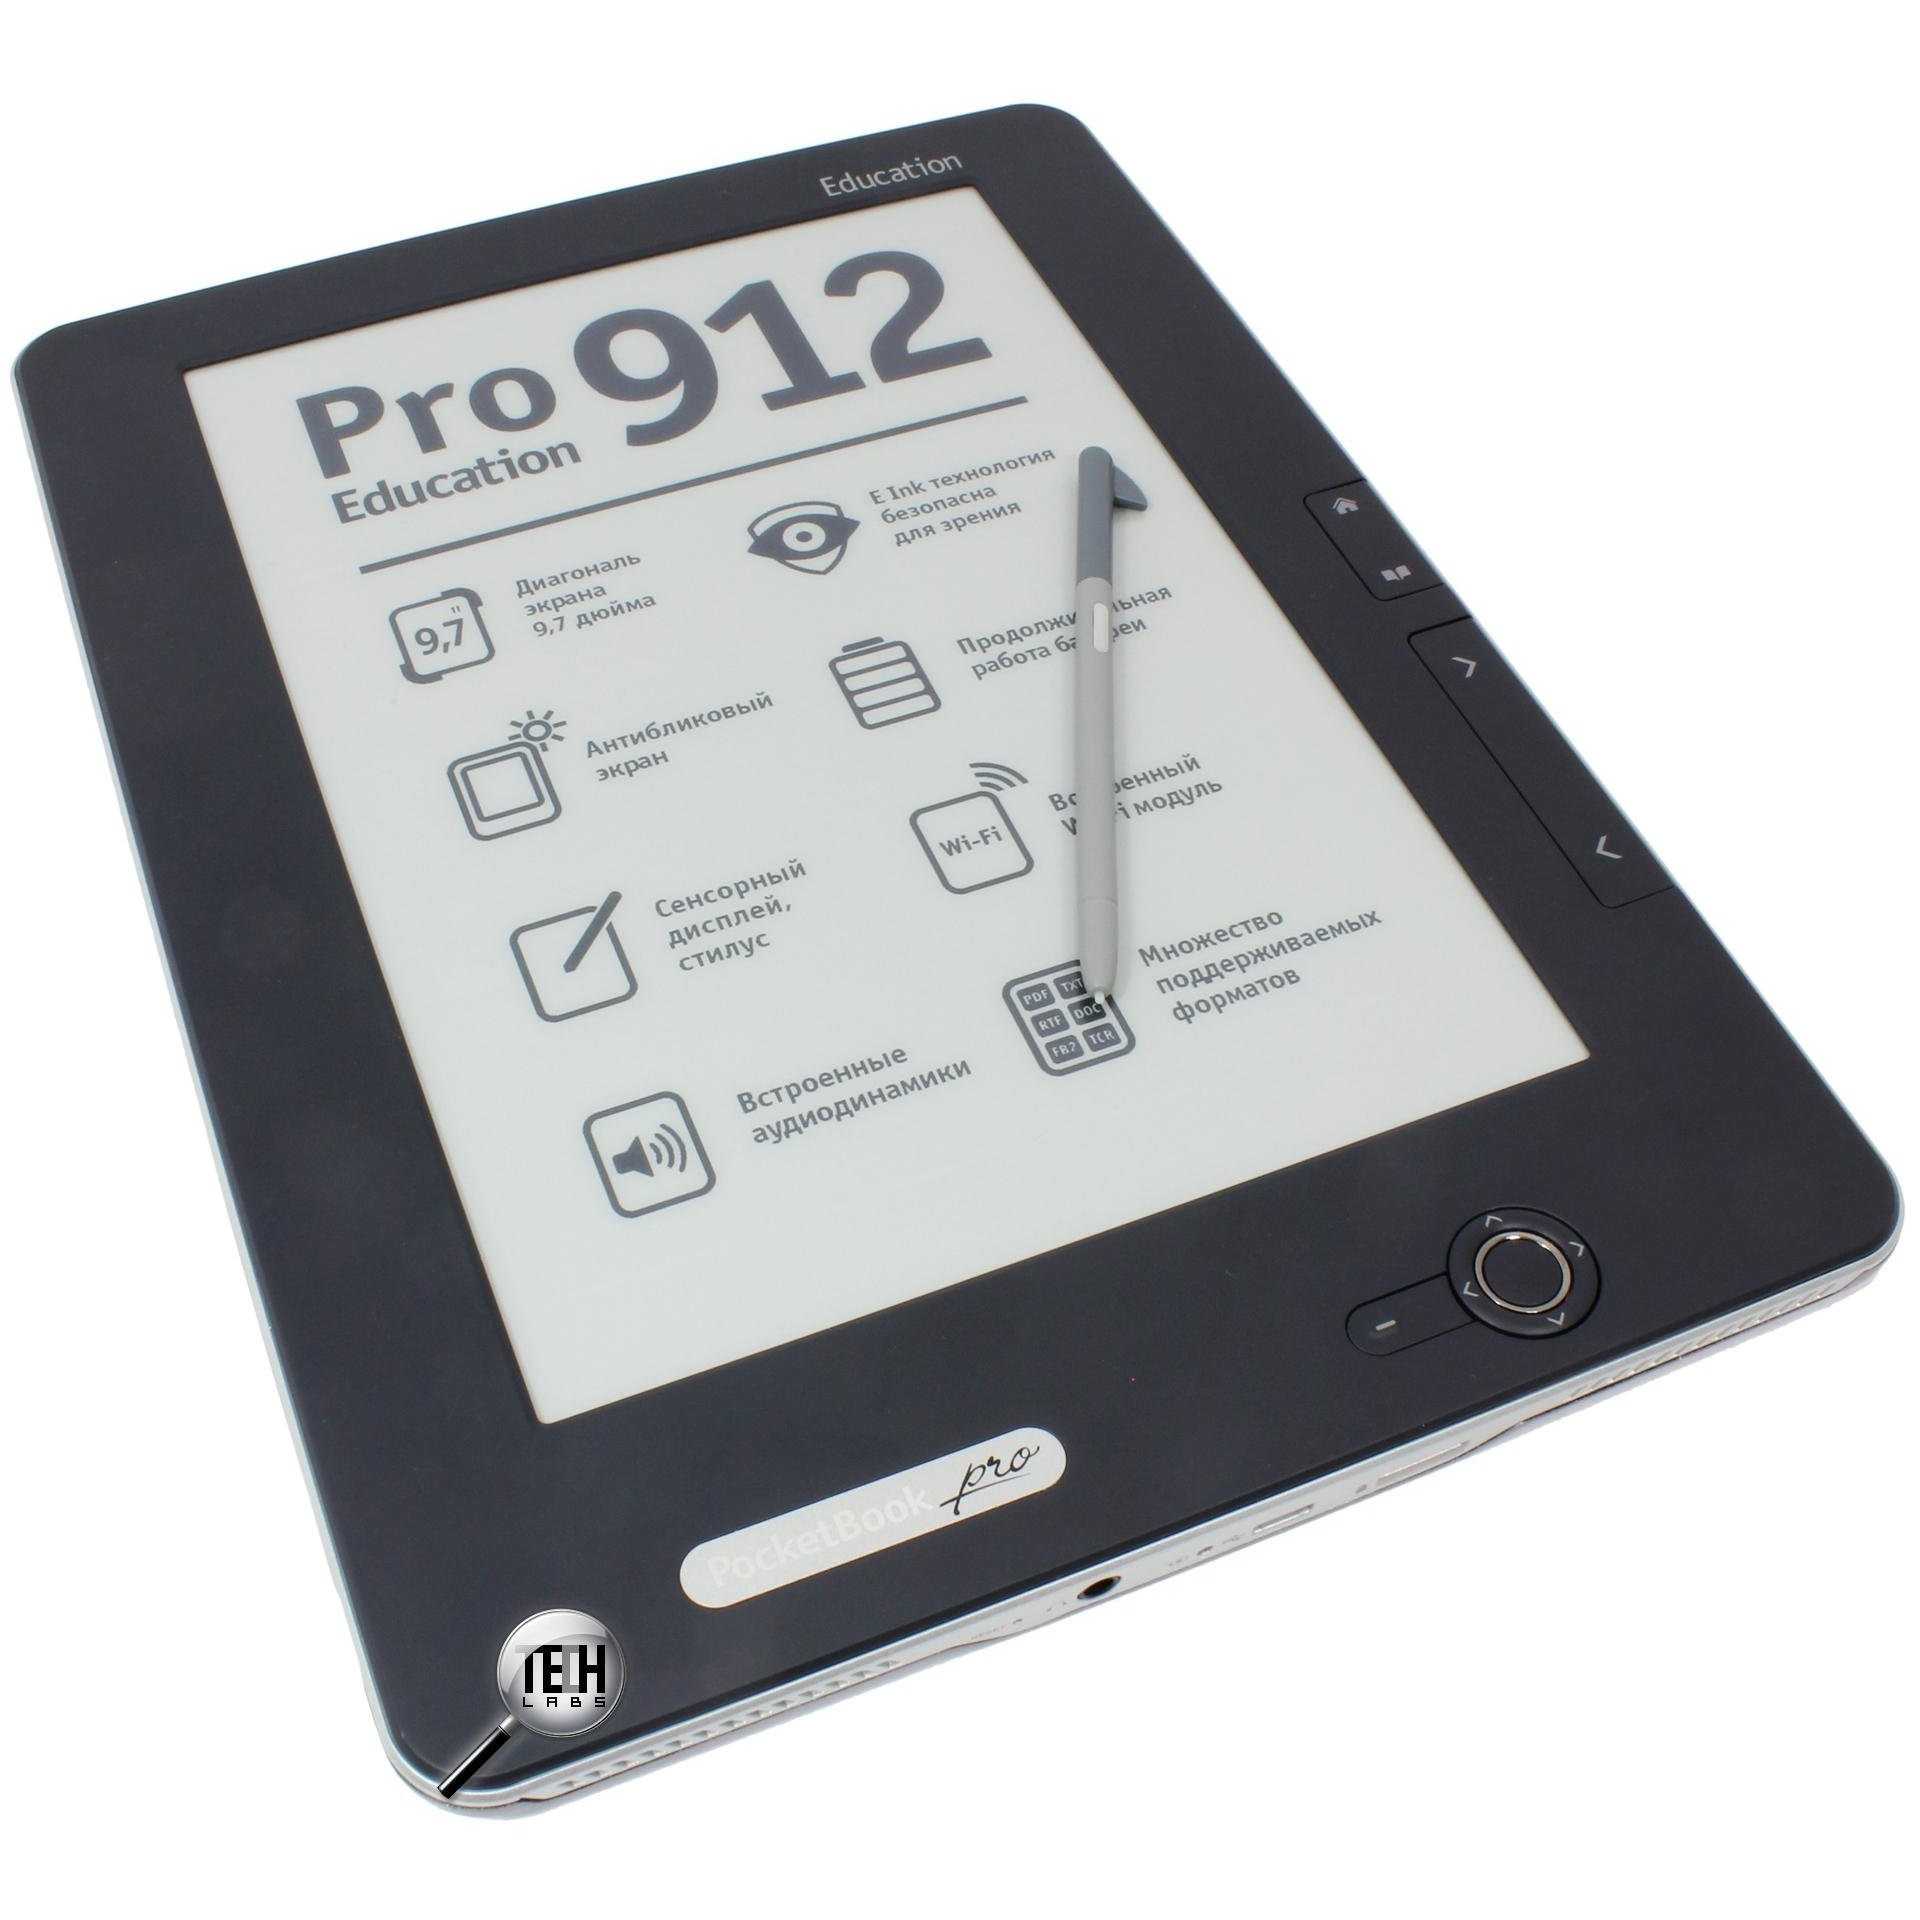 Электронная книга pocketbook pro 912 — купить, цена и характеристики, отзывы